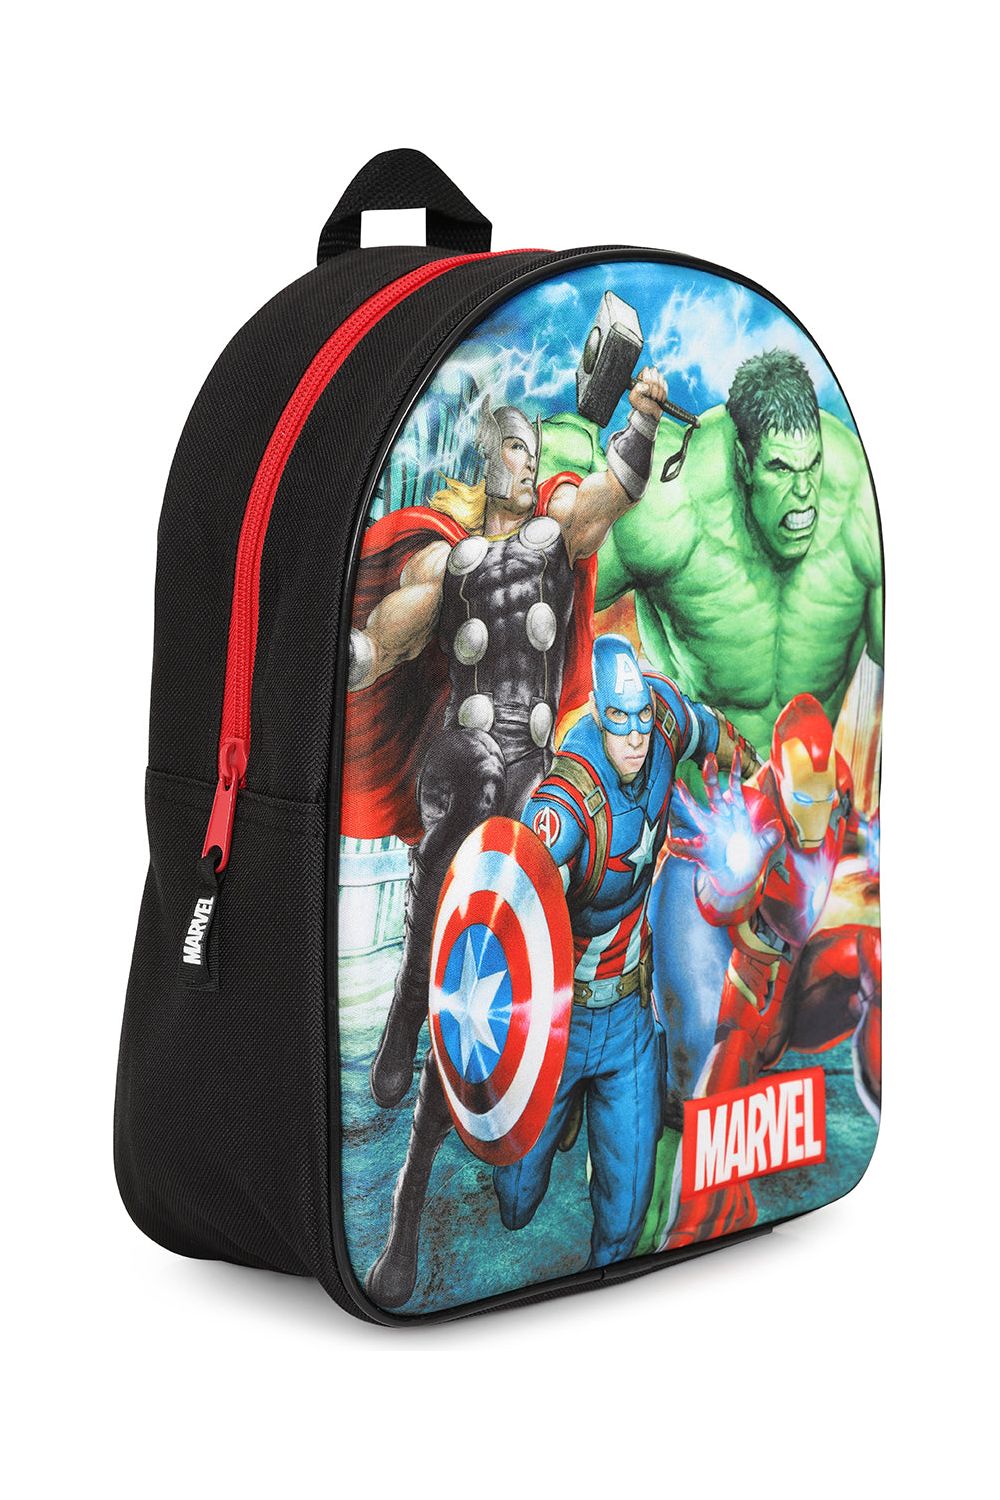 Official Marvel Avengers 3D Backpack Iron Man Hulk Thor Captain America